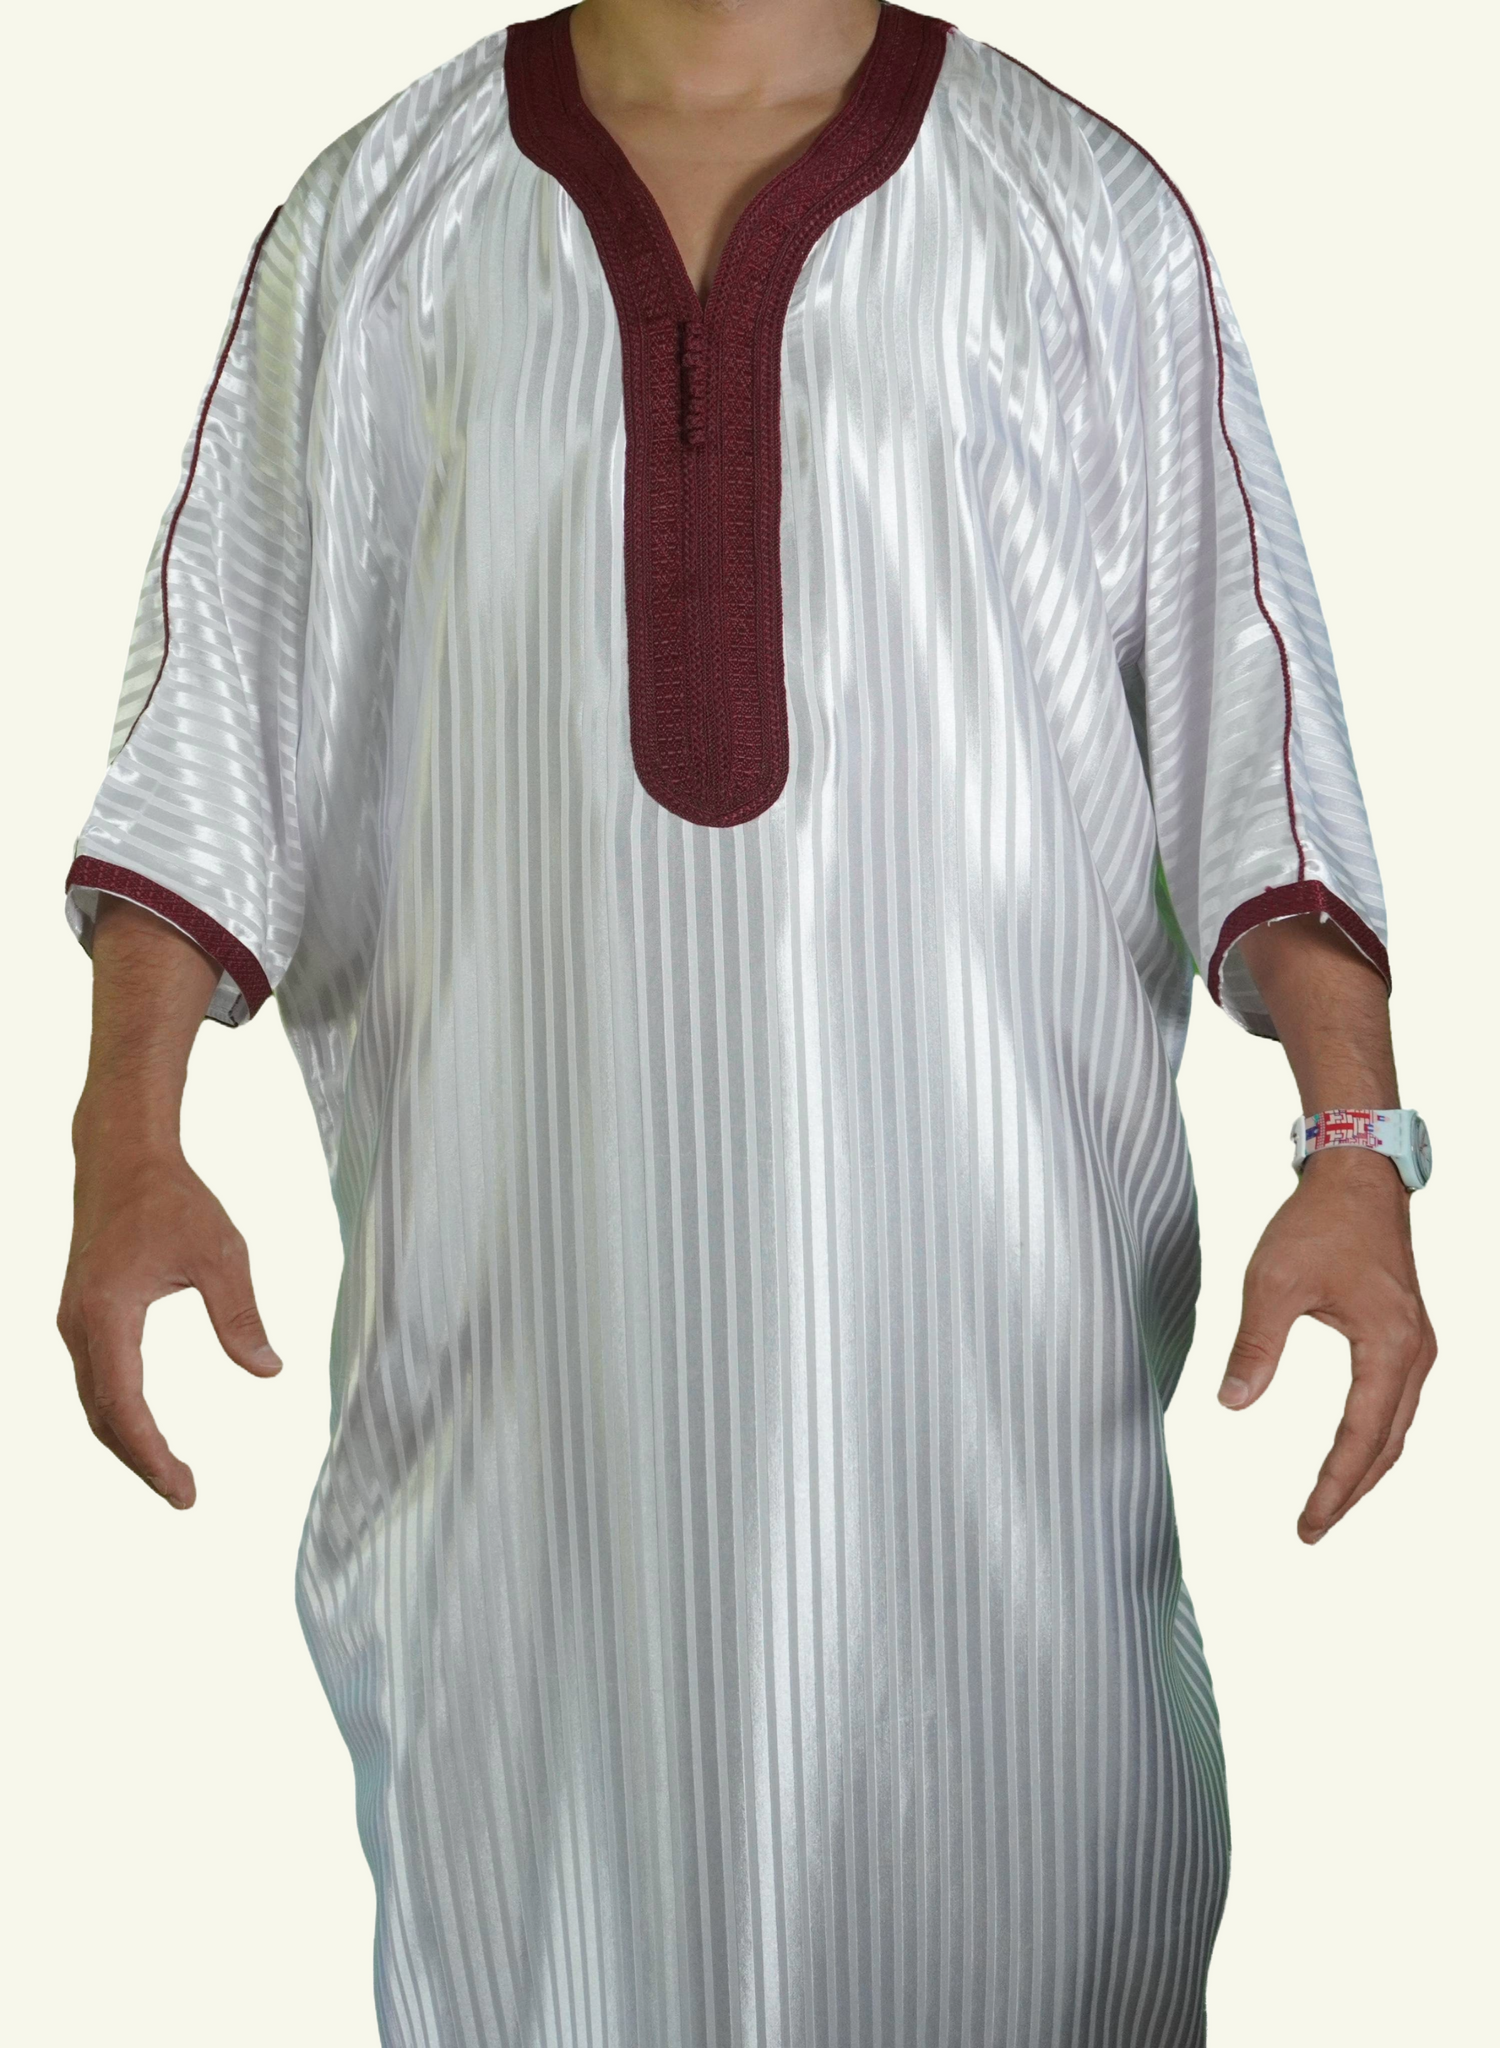 Ein männlicher Körper in einem gestreiften weiß-roten Djellaba-Gebetskleid. Der Kopf und die Füße sind nicht sichtbar. Das Kleid zeichnet sich durch seine lockere und legere Passform aus.